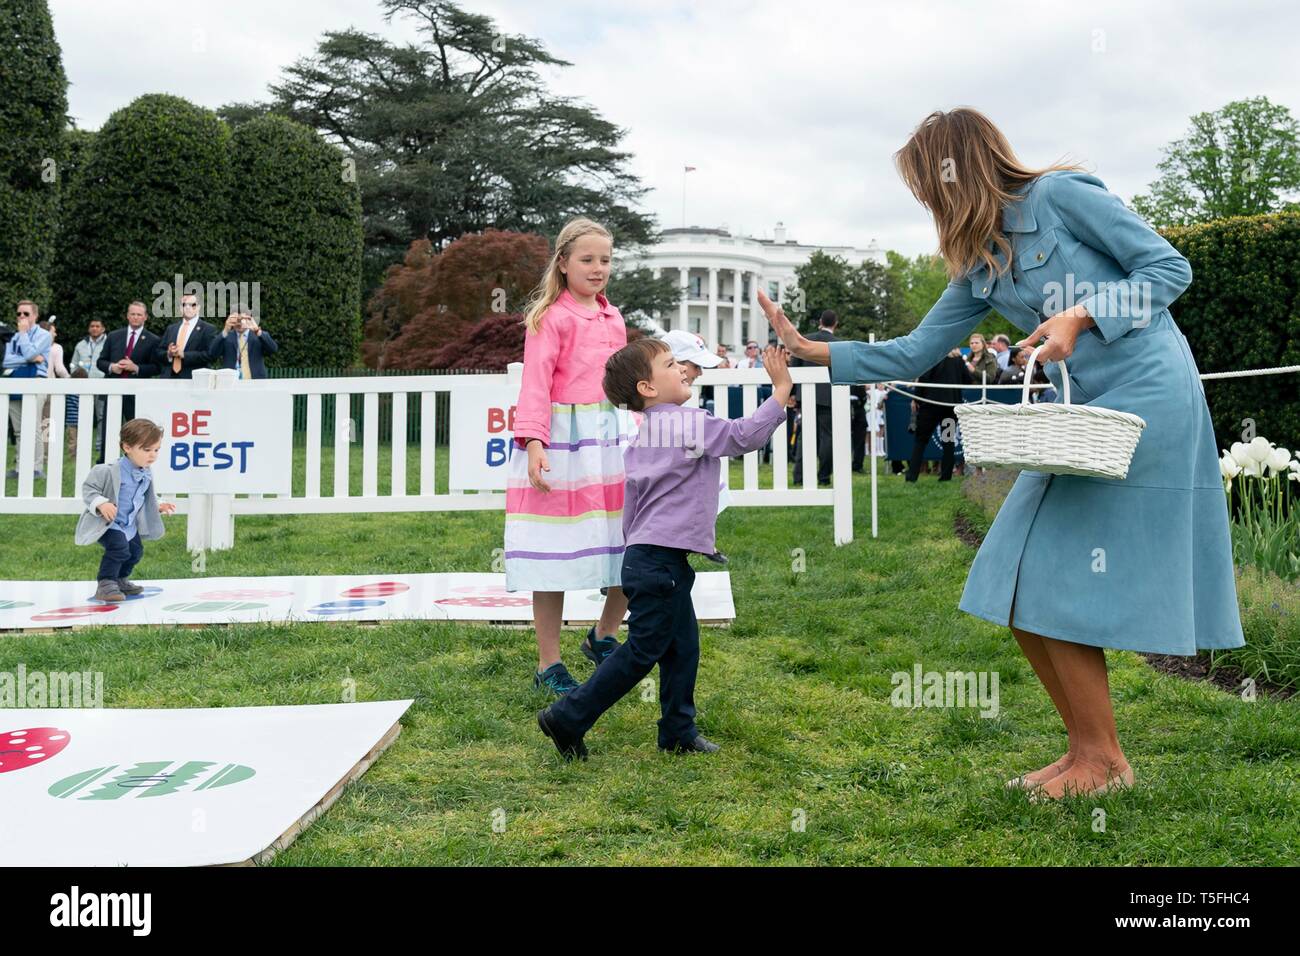 Us-First Lady Melania Trump am hopse Spiel während des Weißen Hauses Easter Egg Roll Event auf dem Südrasen des Weißen Hauses April 22, 2019 in Washington, DC. Dies ist das 141 Jahr für das Frühjahr stattfindenden Veranstaltung. Stockfoto